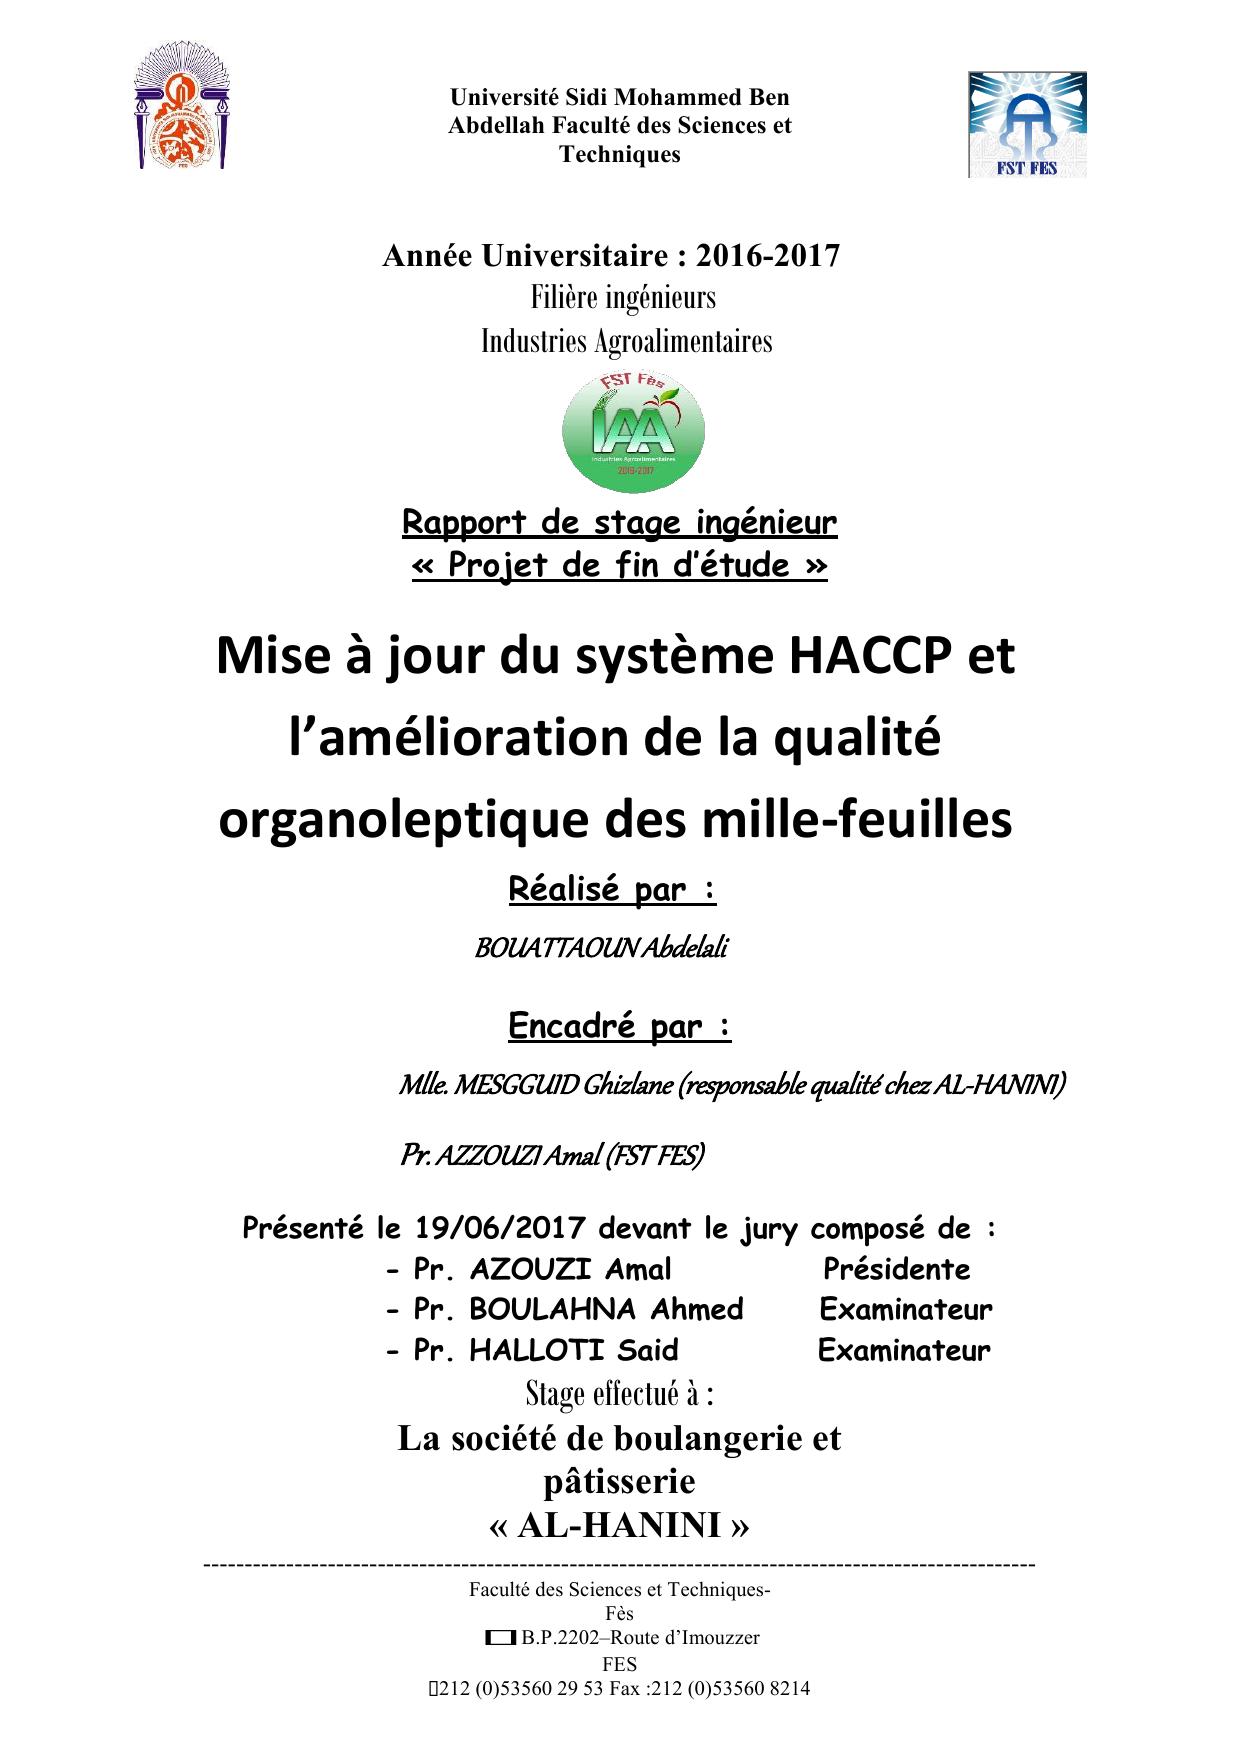 Mise à jour du système HACCP et l’amélioration de la qualité organoleptique des mille-feuilles